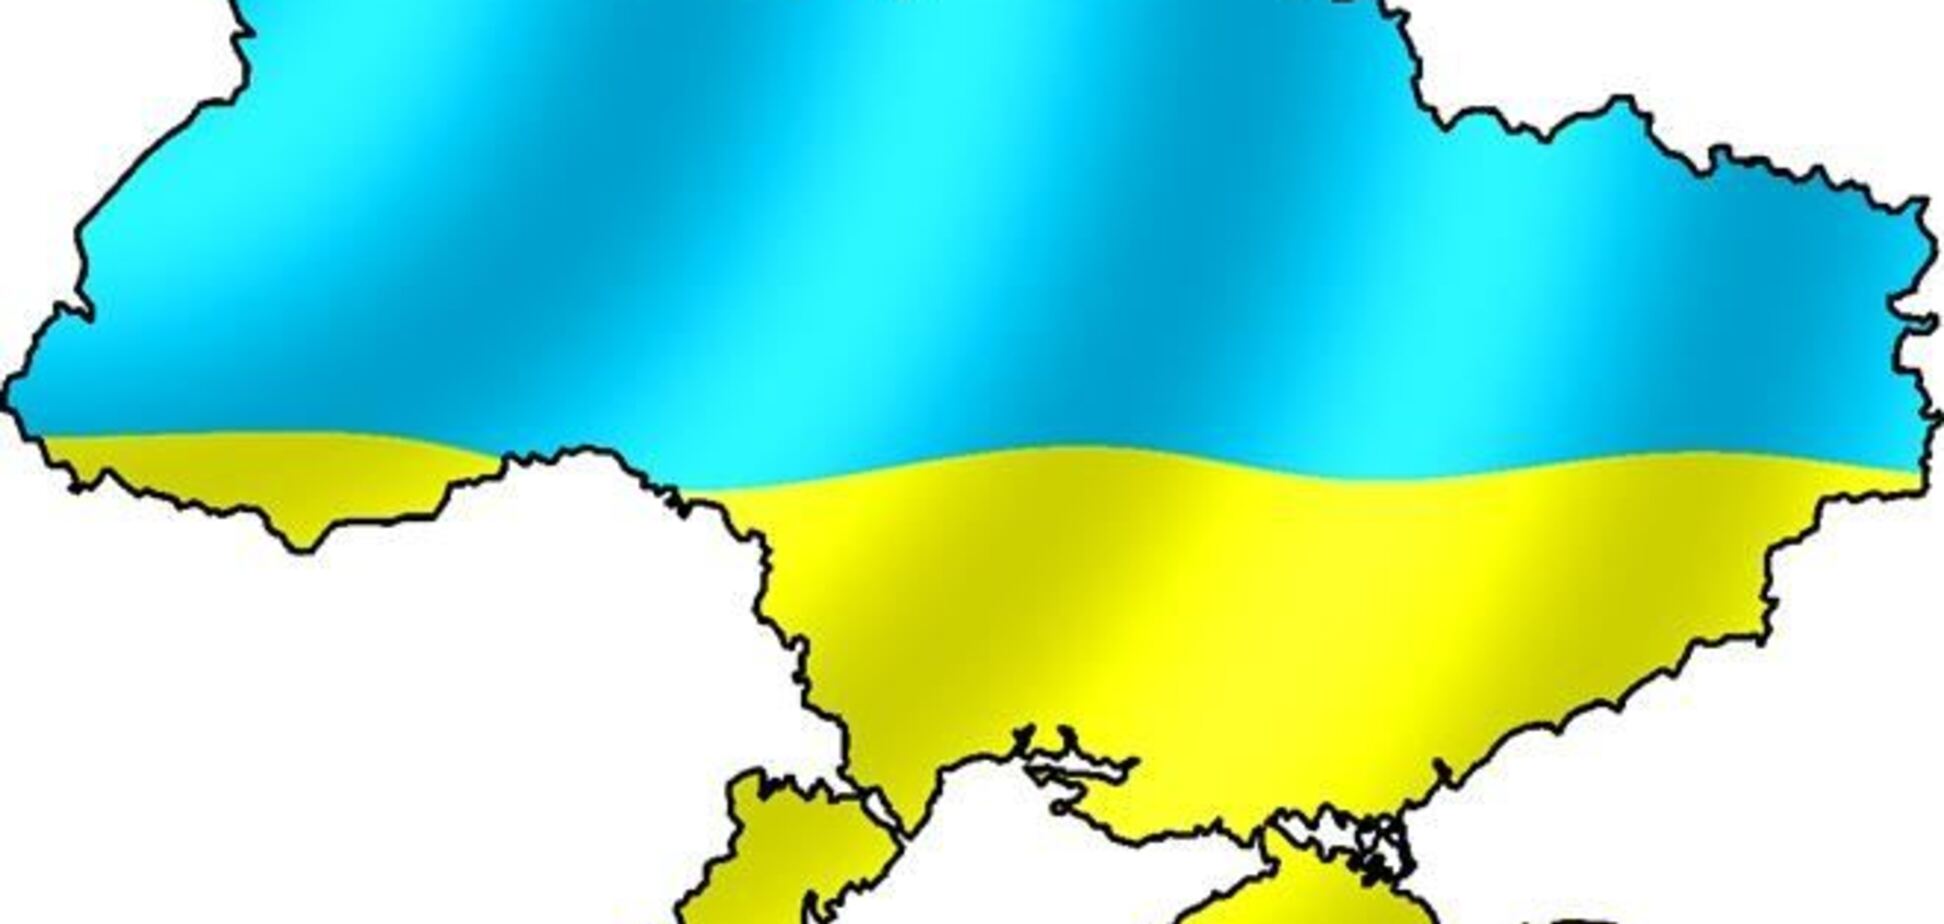 Стране нужны представители во власти, которых признают представителями интересов всей украинской нации - Ермолаев